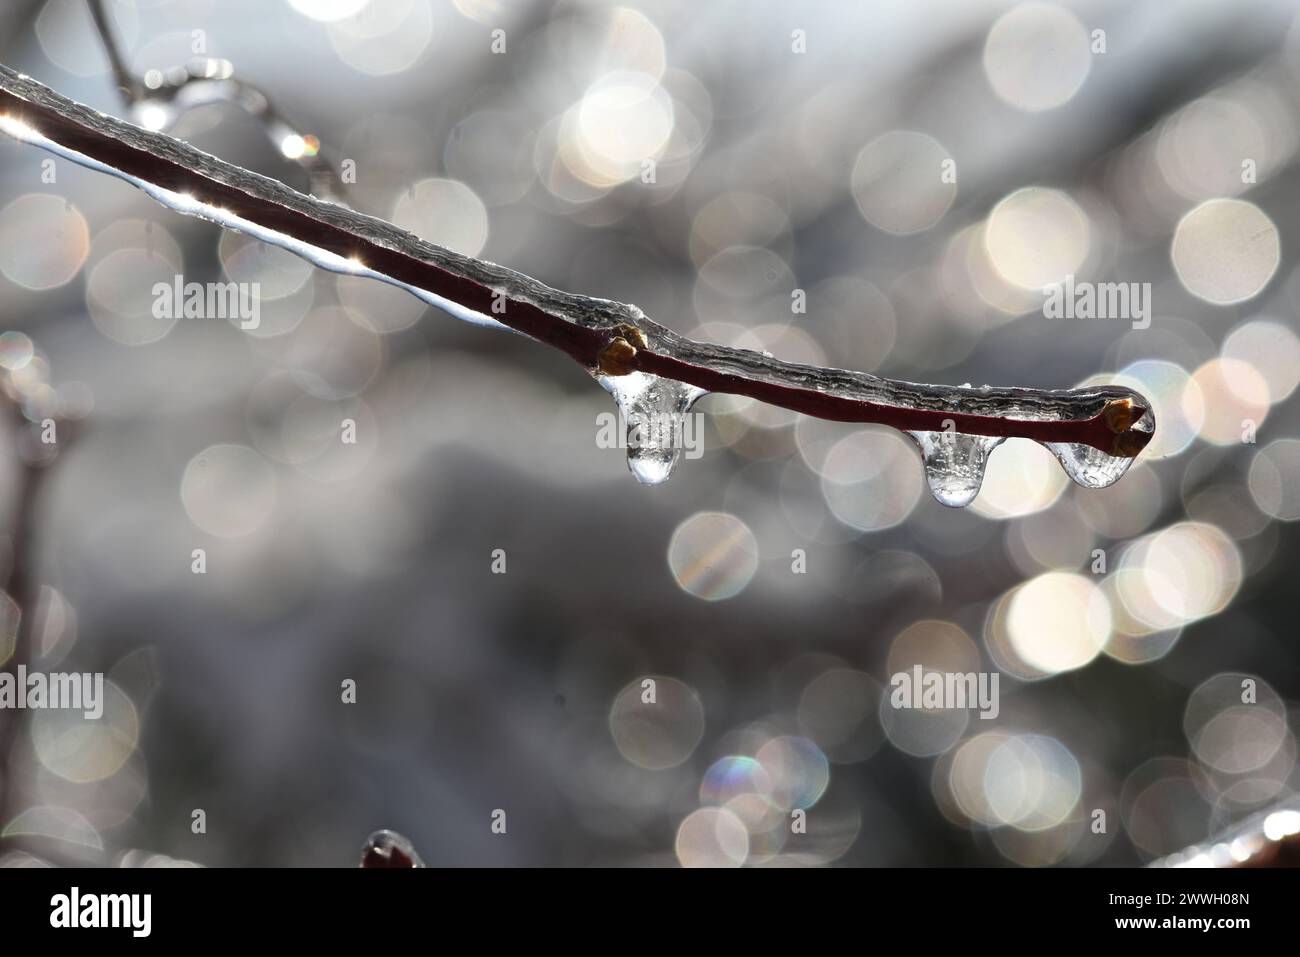 Eisregen ist Regen, der sofort gefriert, wenn er auf kalten Boden trifft oder mit festen Gegenstaenden, zum Beispiel Aeste in Beruehrung kommt. Freezi Stock Photo